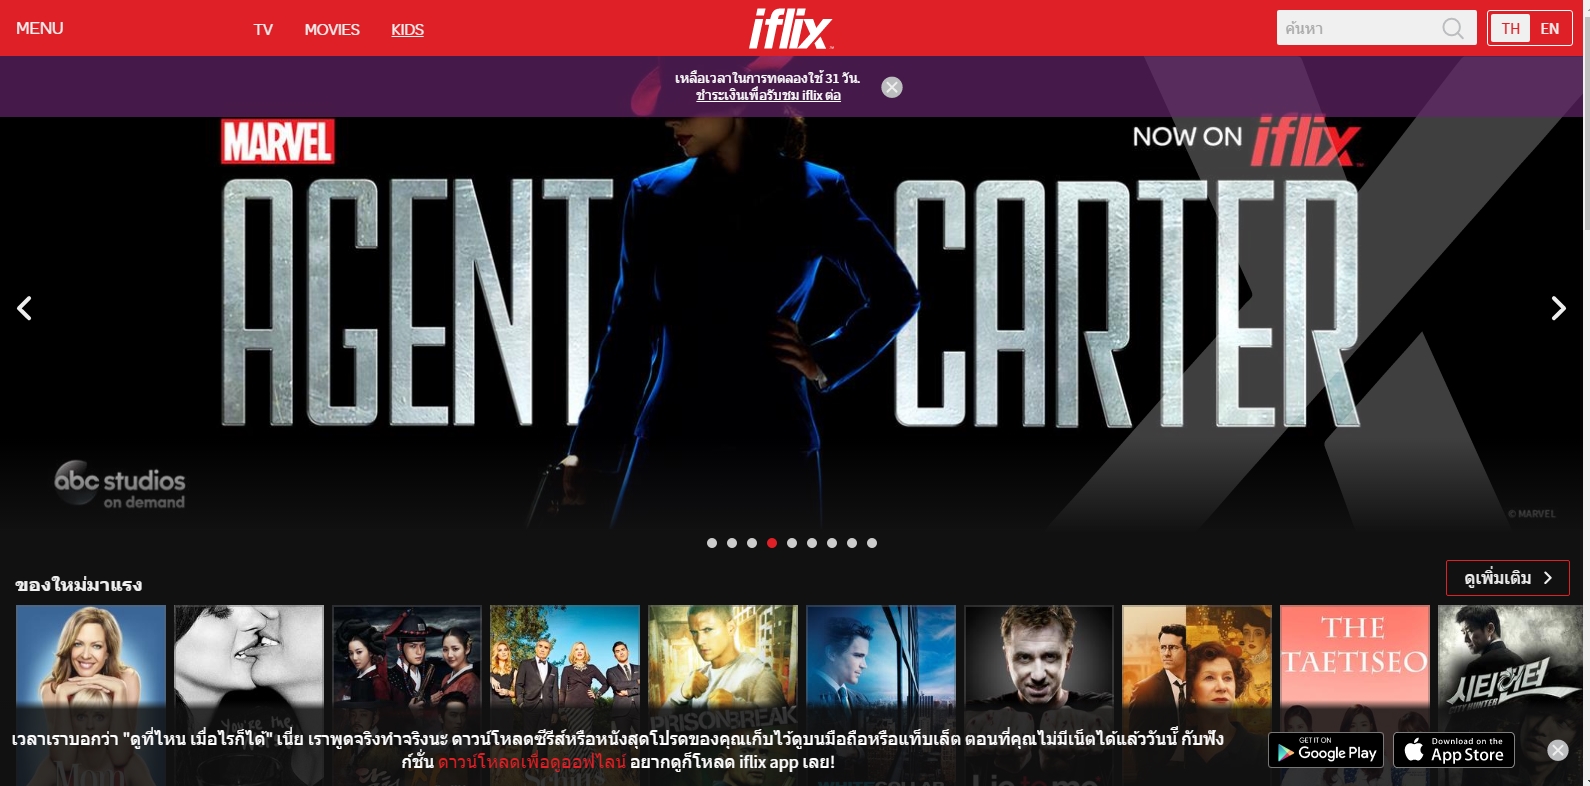 reviews iflix in thailand 002 | ภาพยนตร์ | รีวิวโปรโมชัน iflix ดูหนังถูกลิขสิทธิ์ ราคาถูกเพียงเดือนละ 100 บาท ทำไมยังดูหนังซูมอยู่อีก?